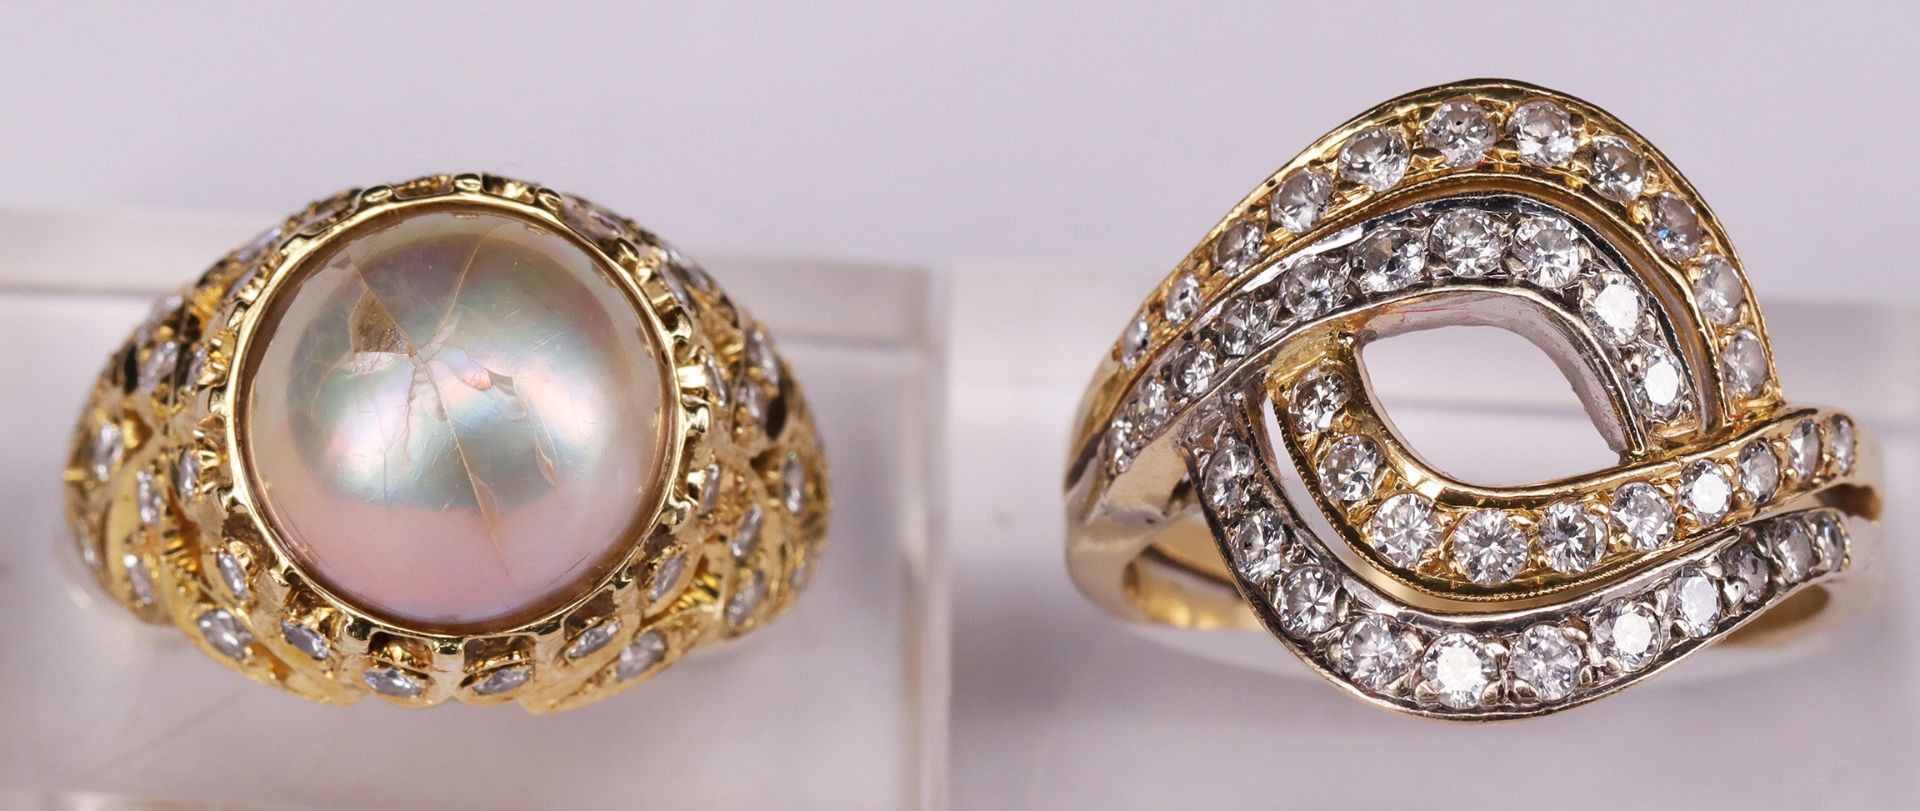 2 Ringe. Aufwändiger Diamantring, 750er GG, mit 1,38 ct Diamanten, RG63, Herkunft Israel. Sowie